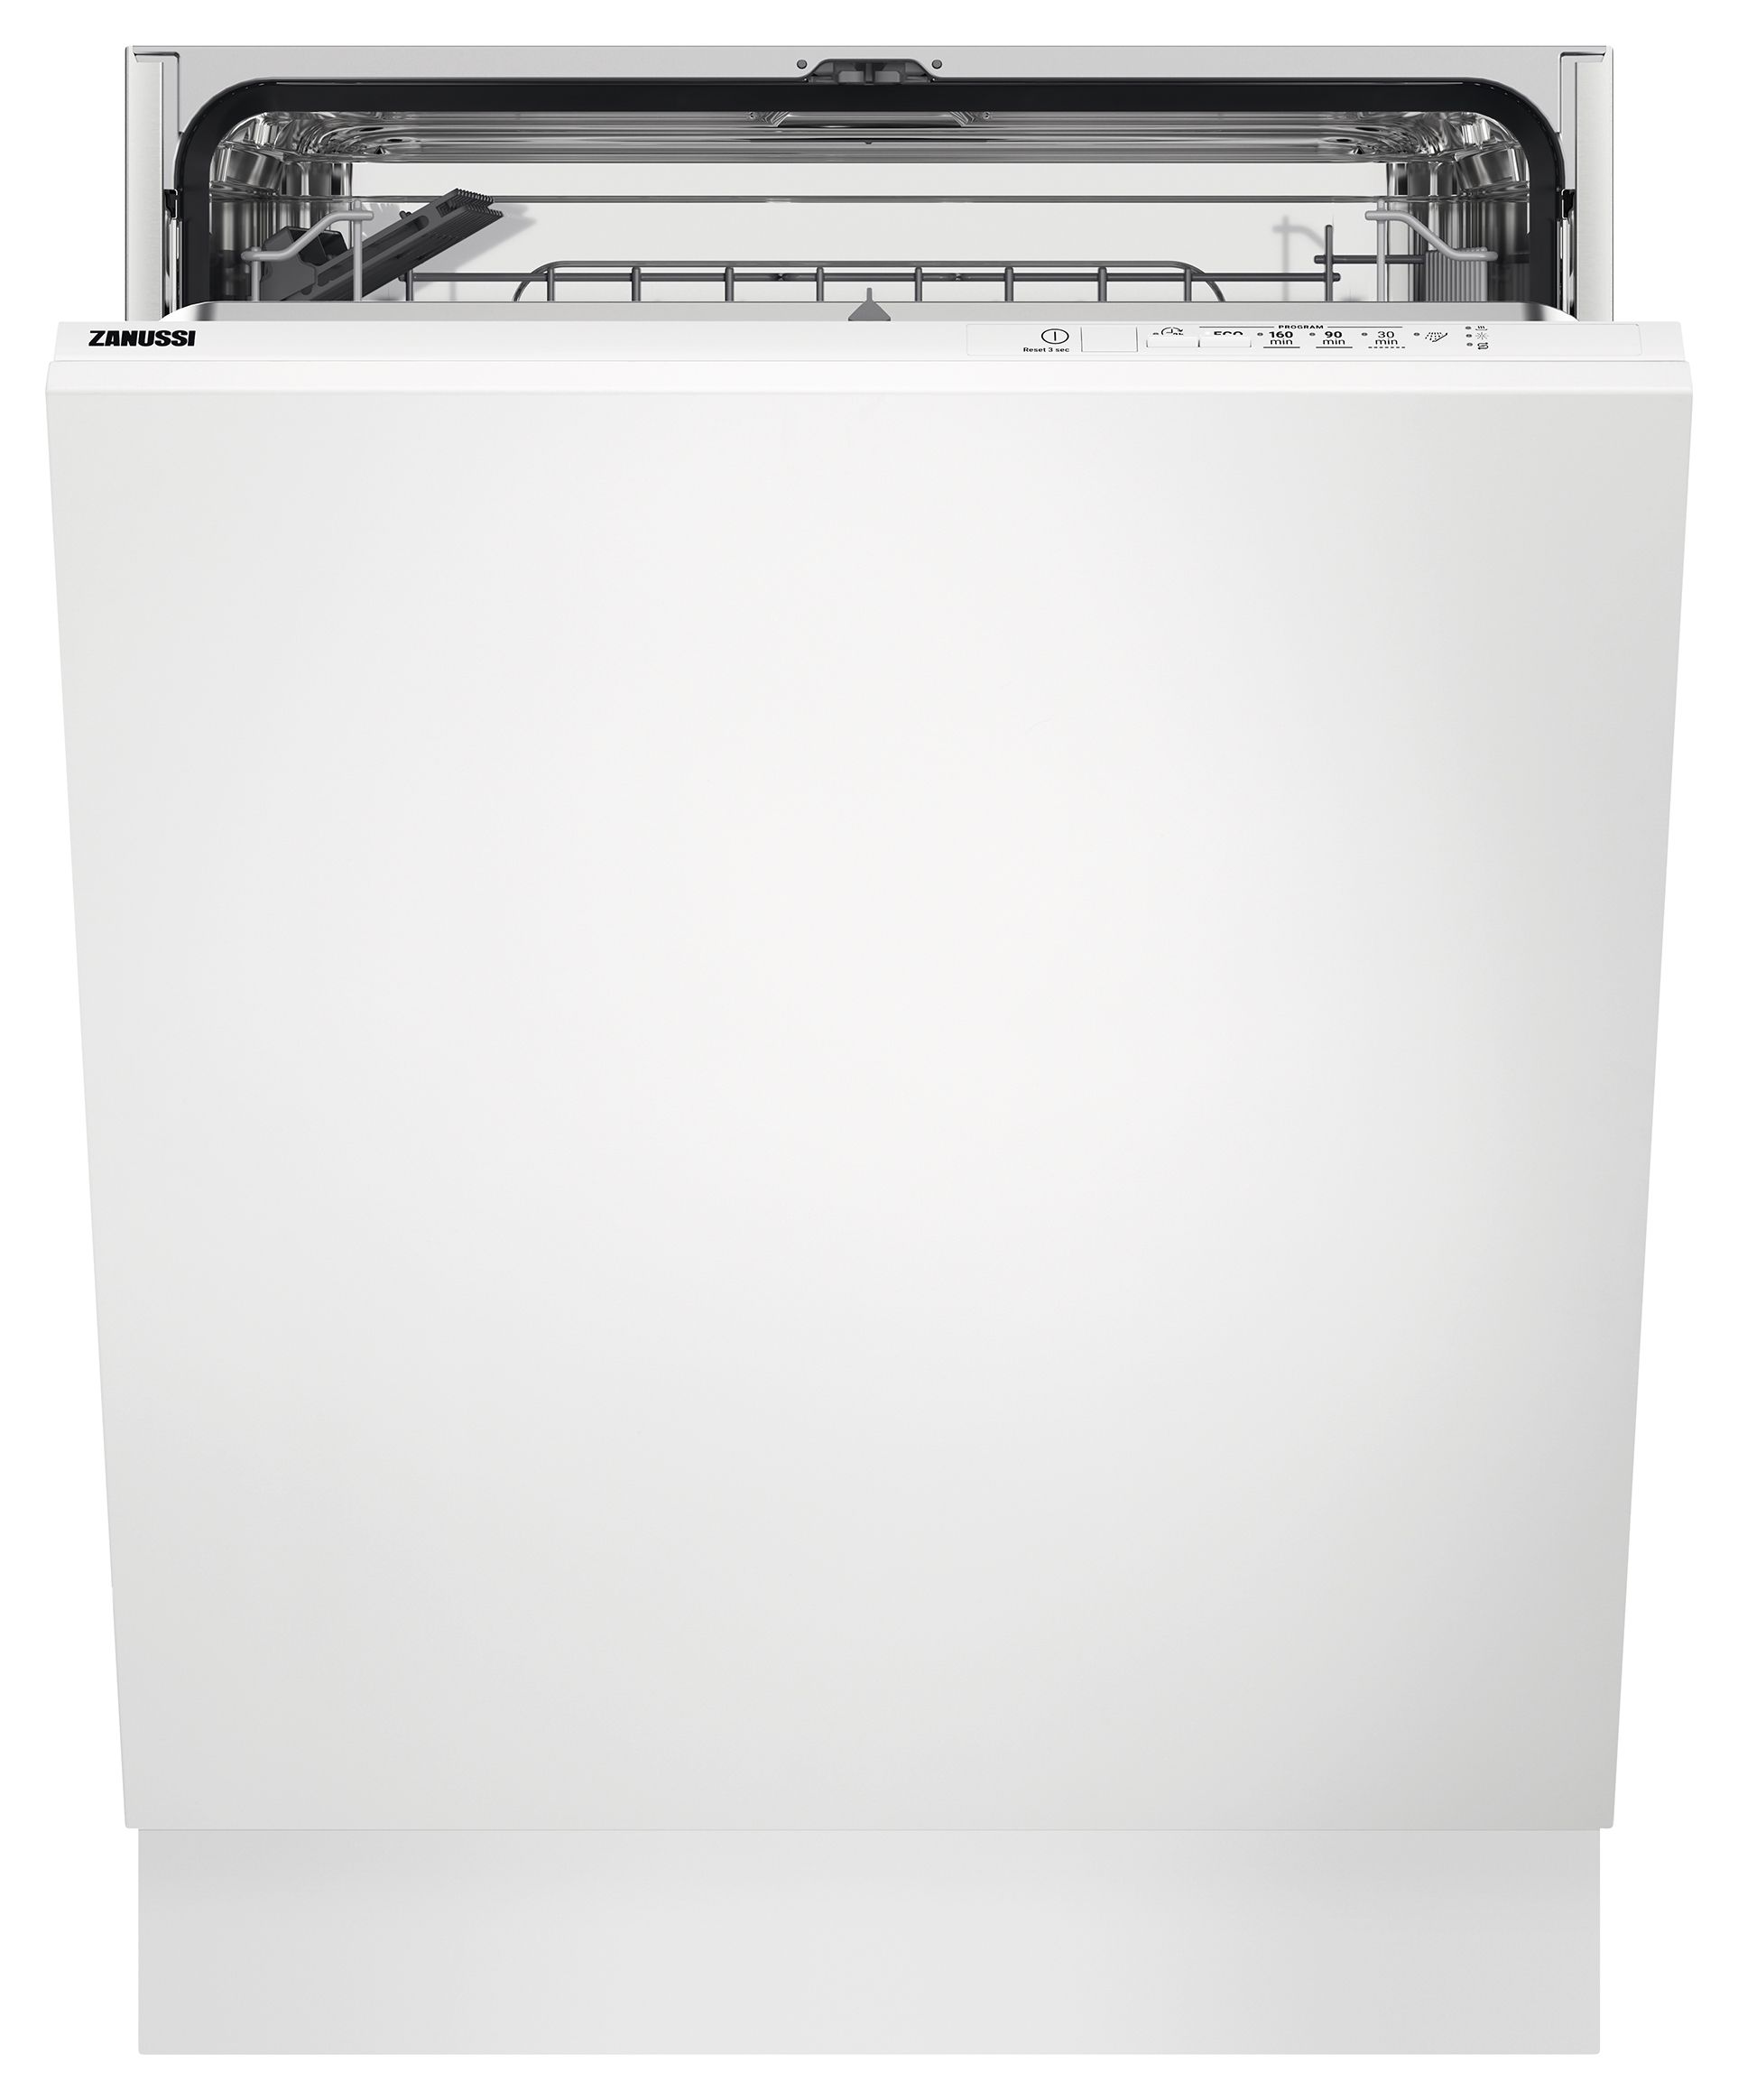 Zanussi 60cm AirDry Dishwasher ZDLN1511 - White